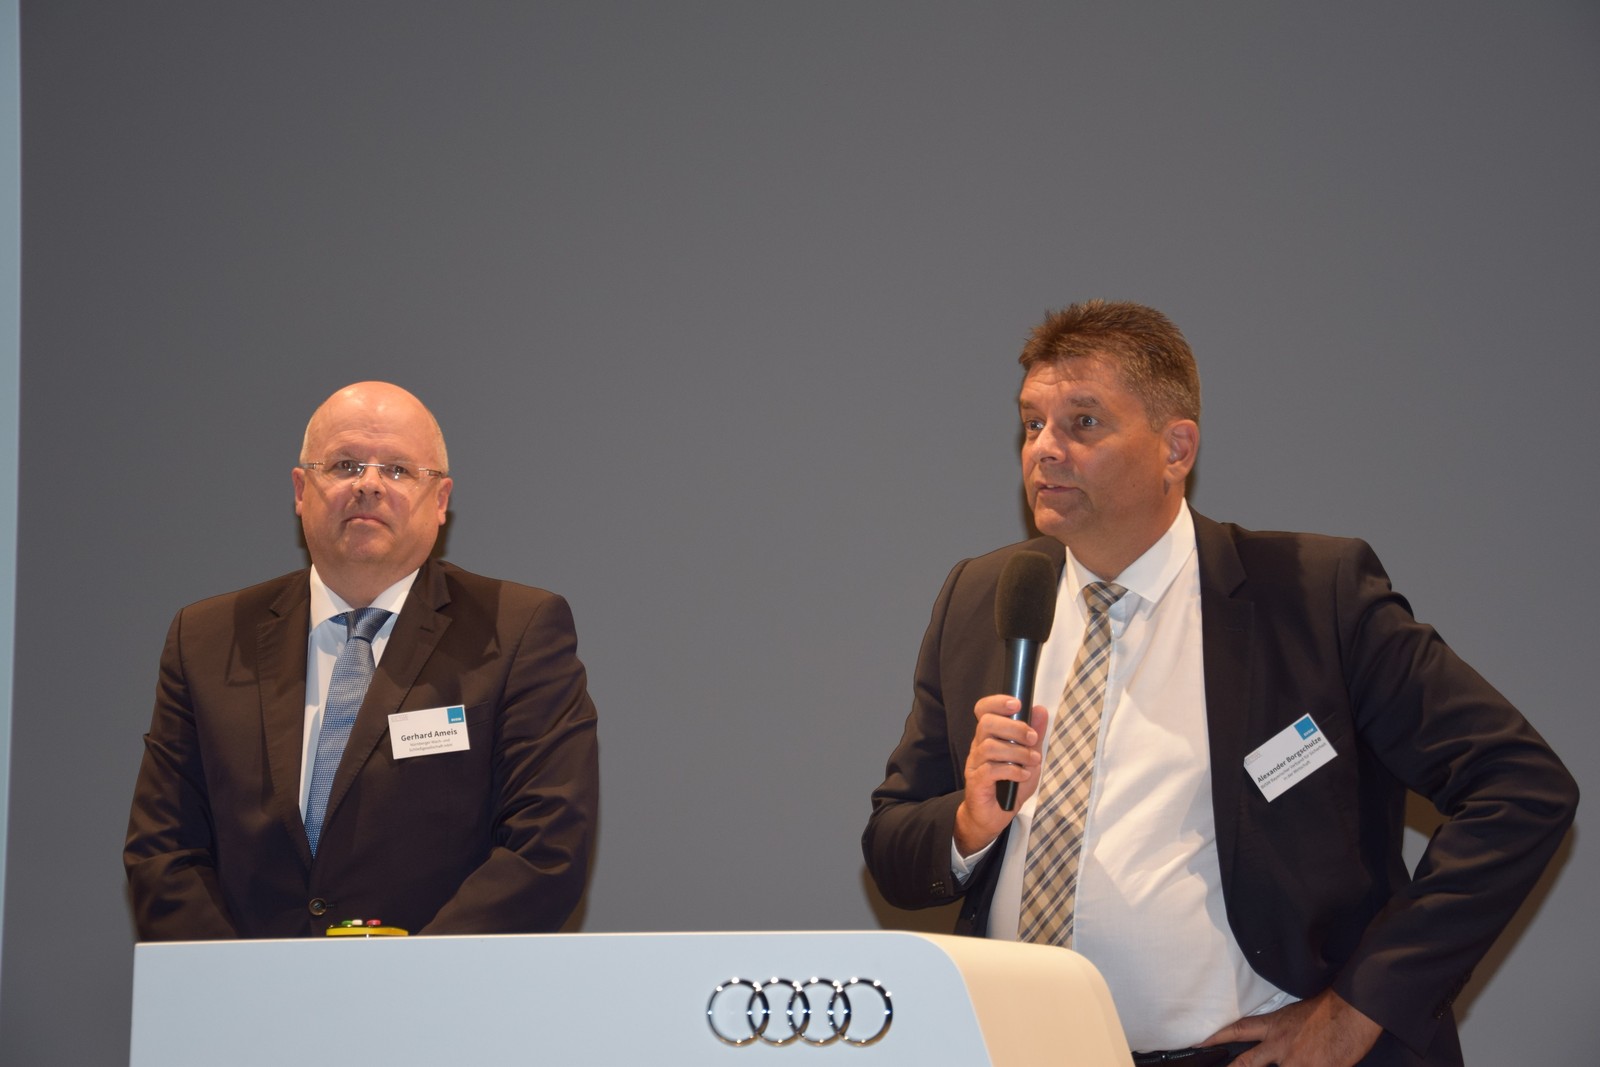 Gerhard Ameis, Landesgruppenvorsitzender des BDSW Bayern, und Alexander Borgschulze, Vorstandsvorsitzender des BVSW, begrüßten die circa 100 Teilnehmer des 8. Bayrischen Sicherheitstages in München.